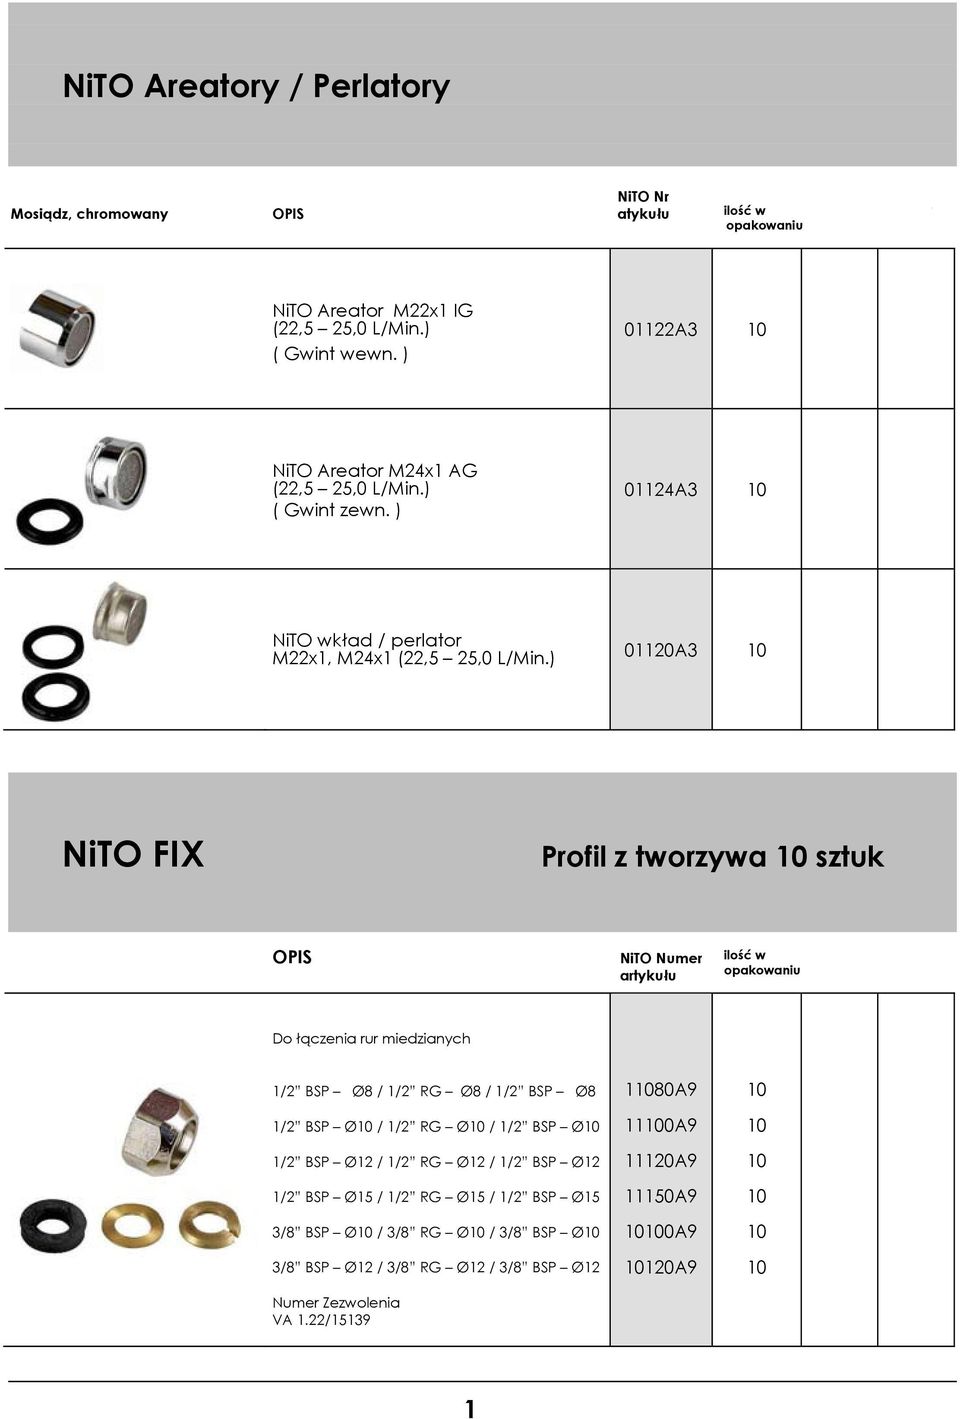 ) 020A3 0 NiTO FIX Profil z tworzywa 0 sztuk OPIS NiTO Numer ilość w Do łączenia rur miedzianych /2 BSP Ø8 / /2 RG Ø8 / /2 BSP Ø8 /2 BSP Ø0 / /2 RG Ø0 / /2